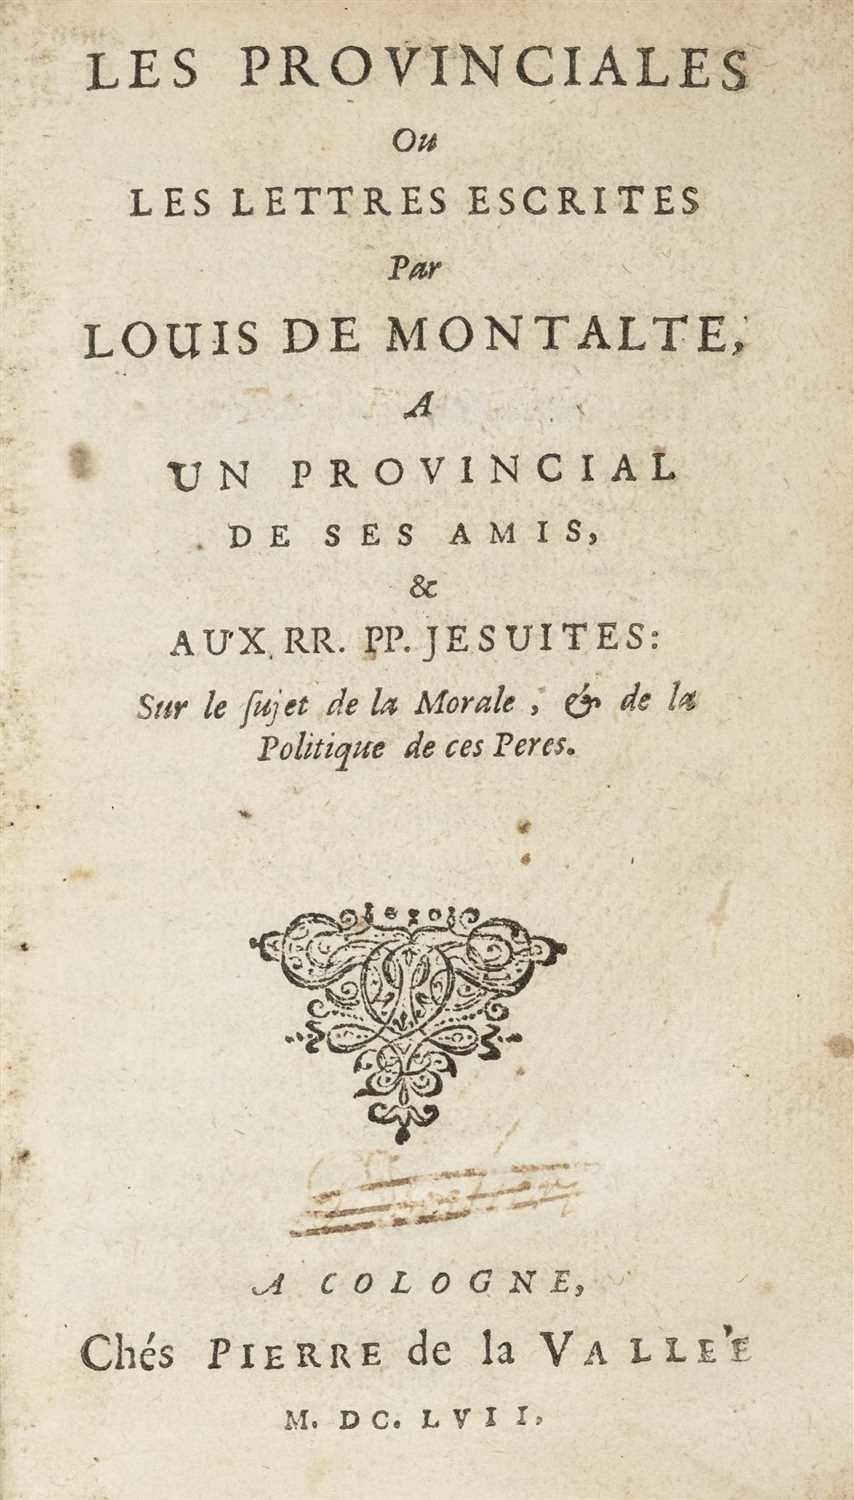 Lot 132 - Pascal (Blaise). Les Provinciales, 1st Elzevir edition, 1657